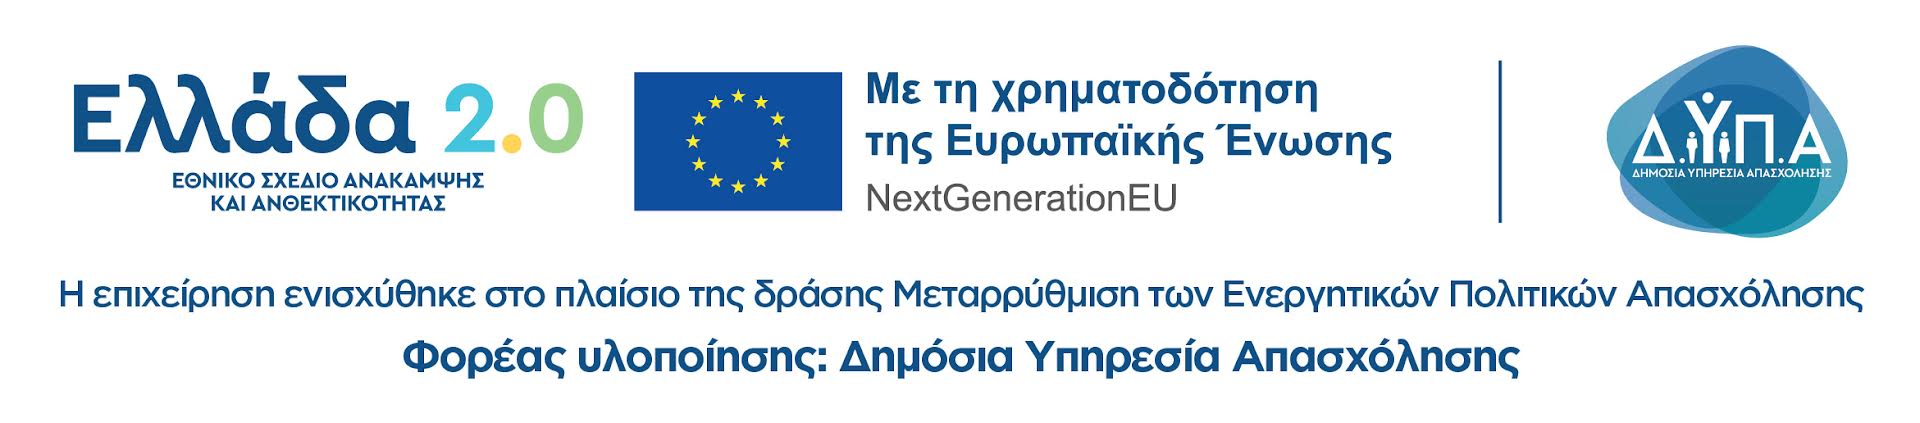 https://greece20.gov.gr/